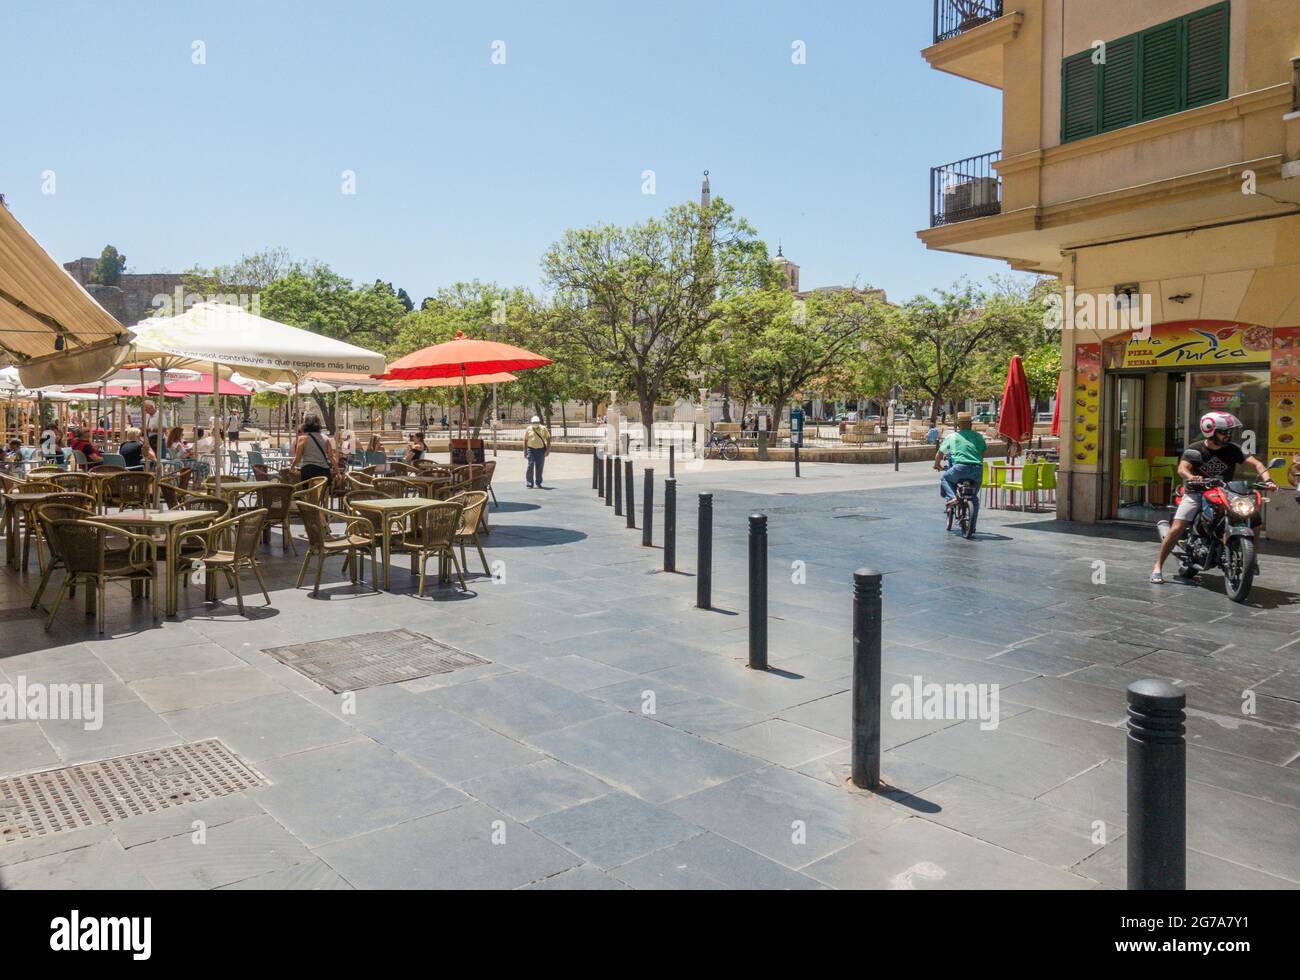 Plaza de la Merced (Mercy Square) square plaza, Costa del Sol, Malaga, Spain. Stock Photo